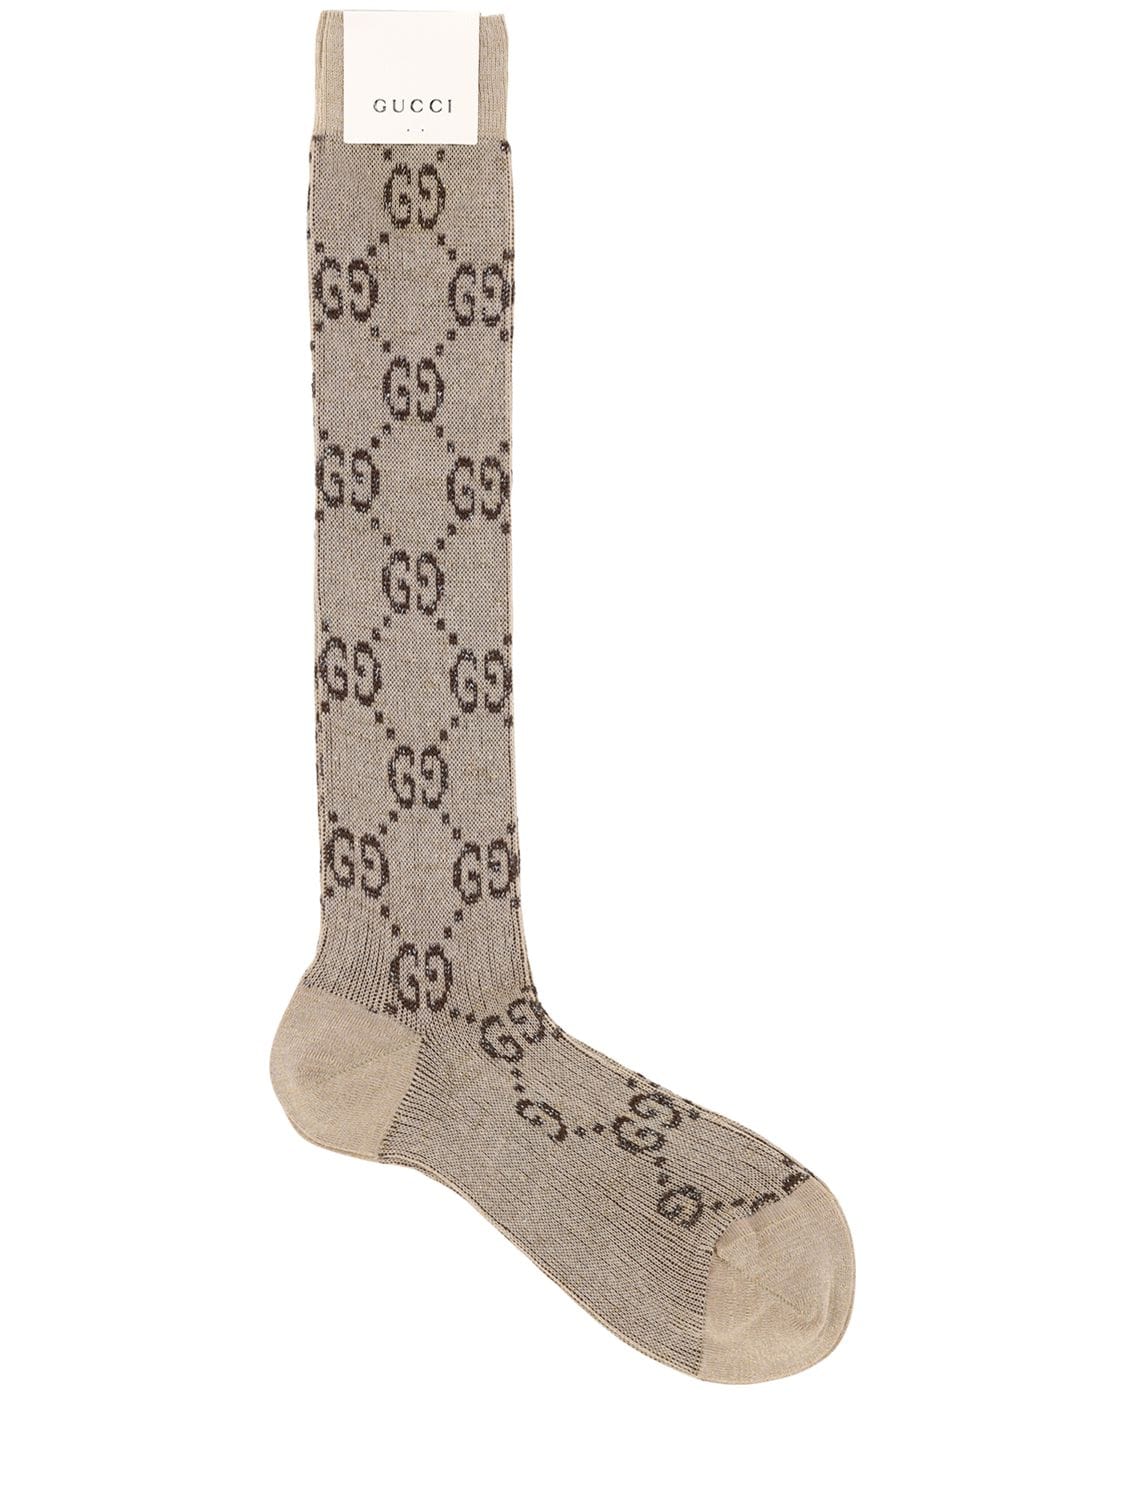 Gucci Long Gg Jacquard Cotton Blend Socks In Shell